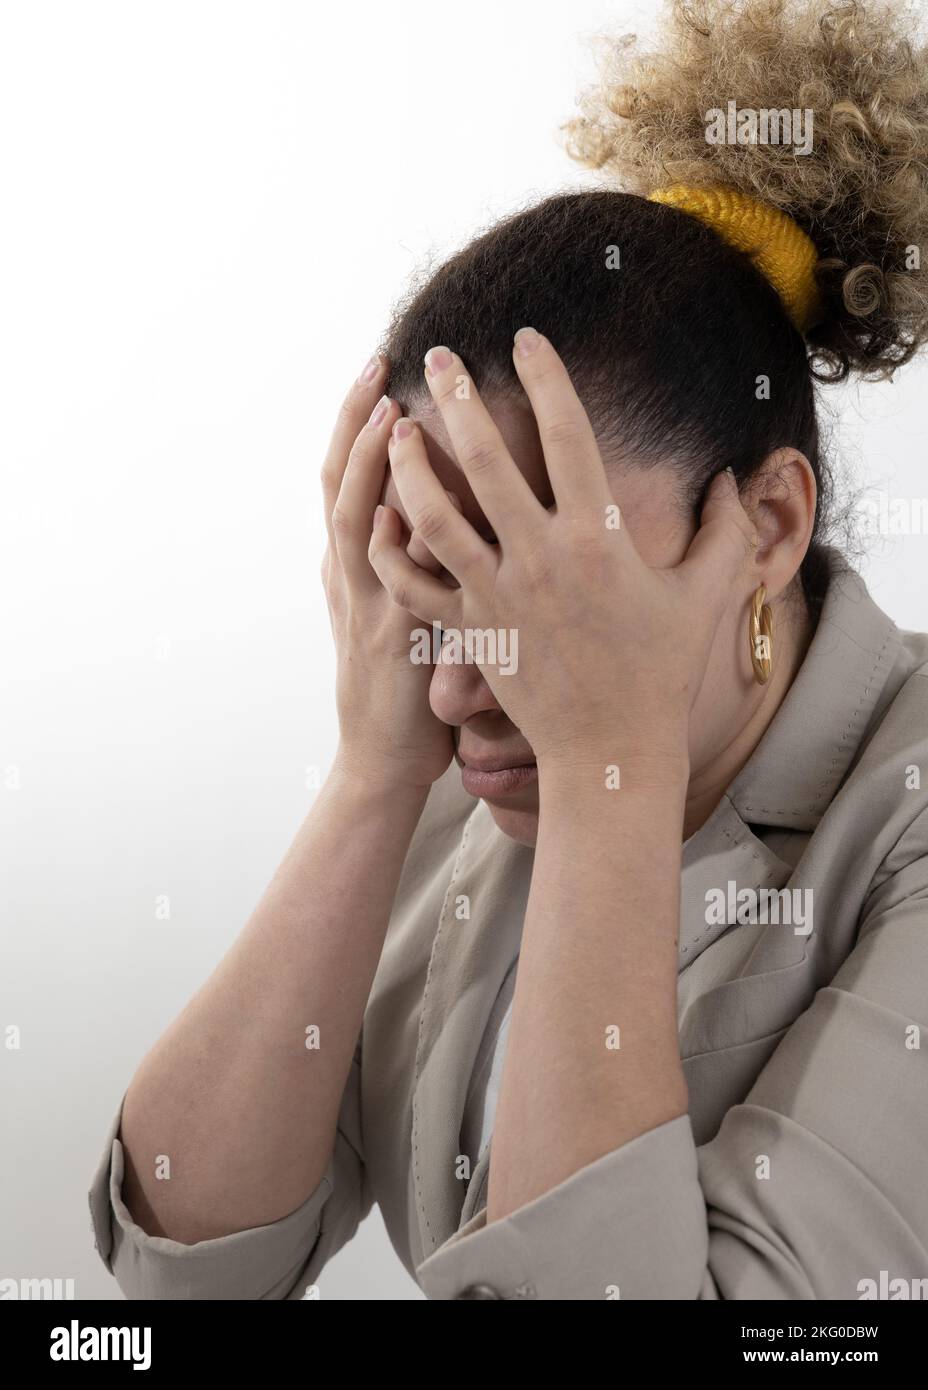 Ragazza Afro con espressione di stress o ansia con le mani a faccia su uno sfondo bianco Foto Stock